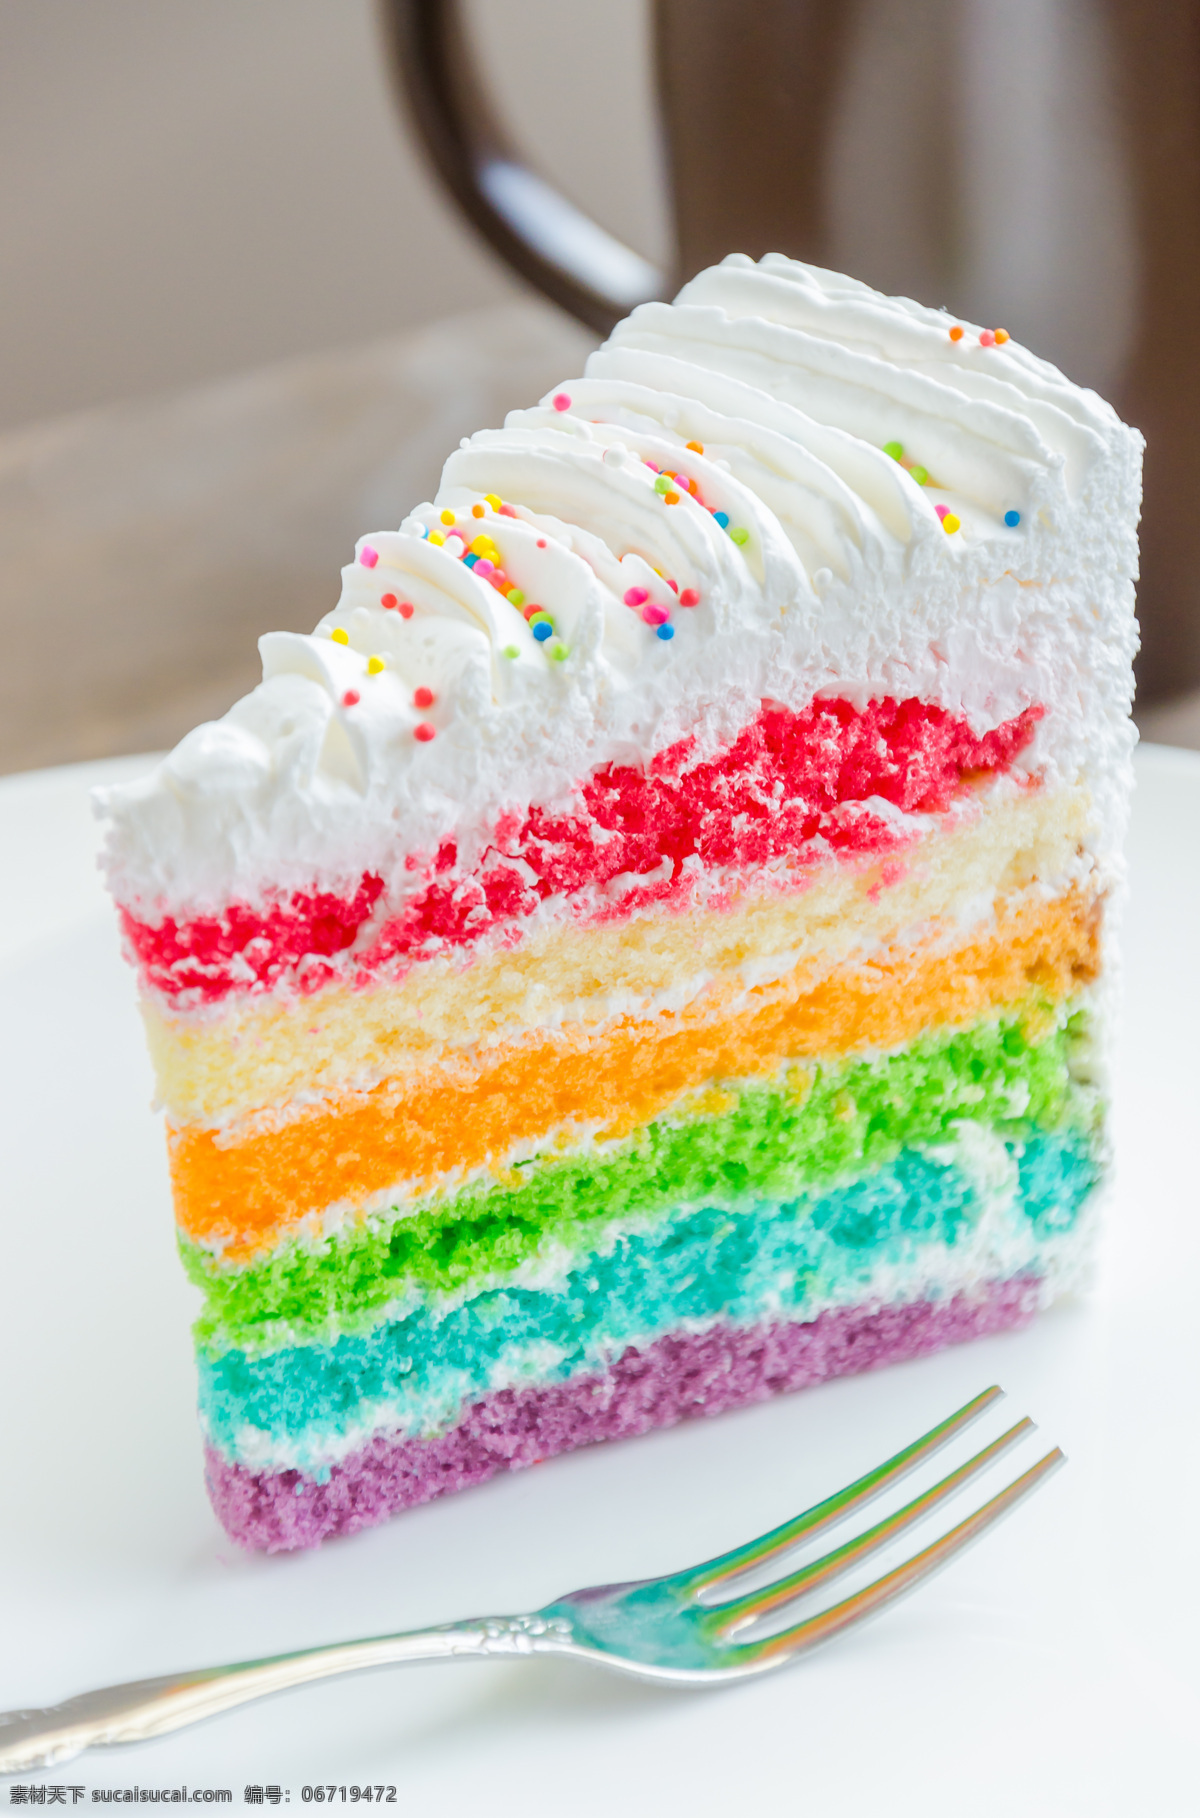 彩虹 蛋糕 奶油蛋糕 彩虹蛋糕 糕点 甜品 食品 食物 生日蛋糕图片 餐饮美食